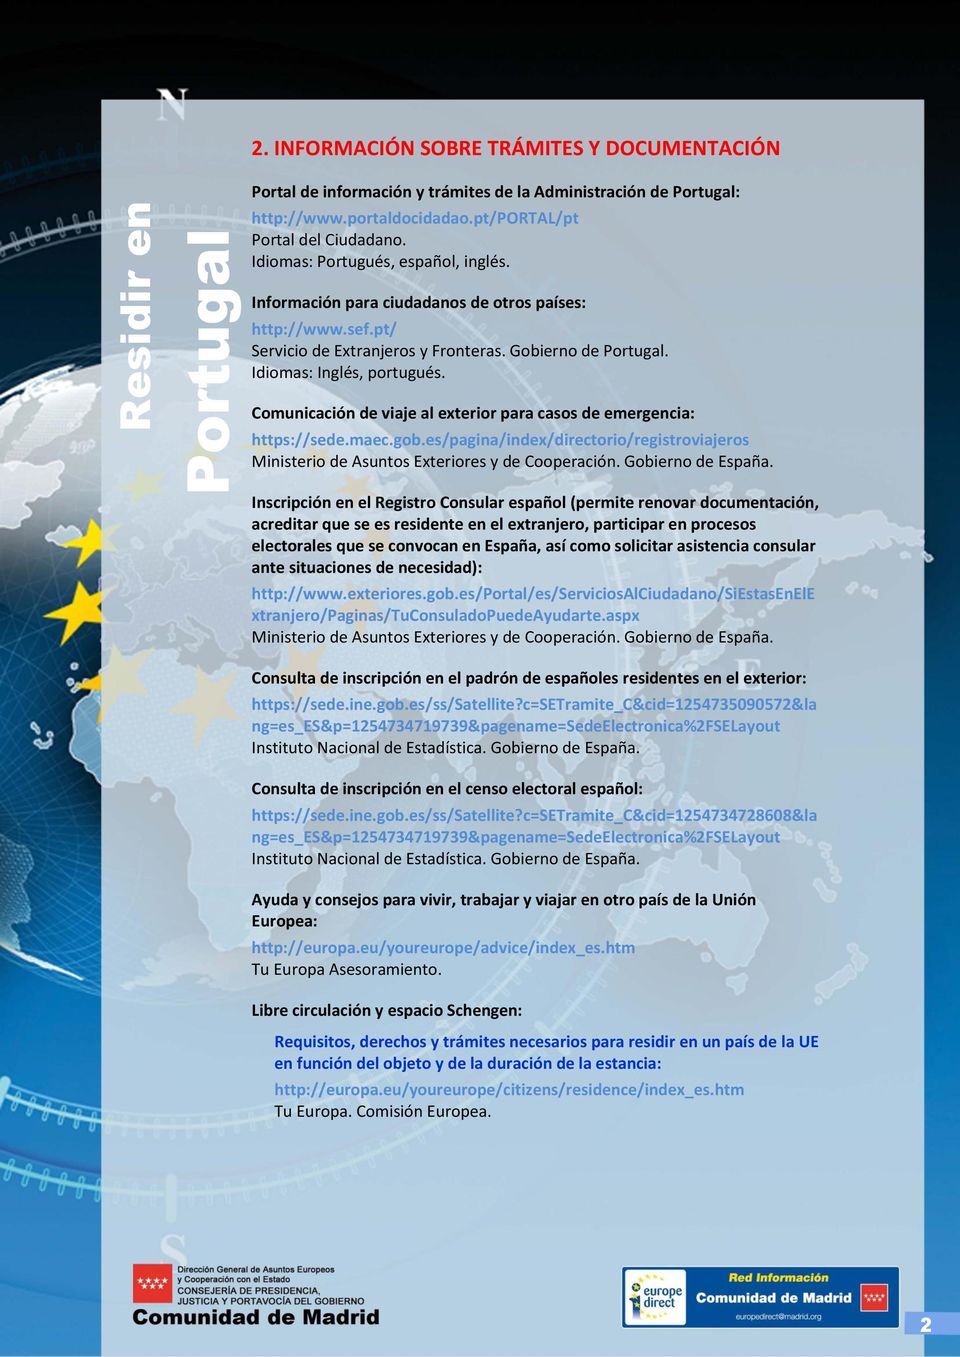 es/pagina/index/directorio/registroviajeros Ministerio de Asuntos Exteriores y de Cooperación. Gobierno de España.